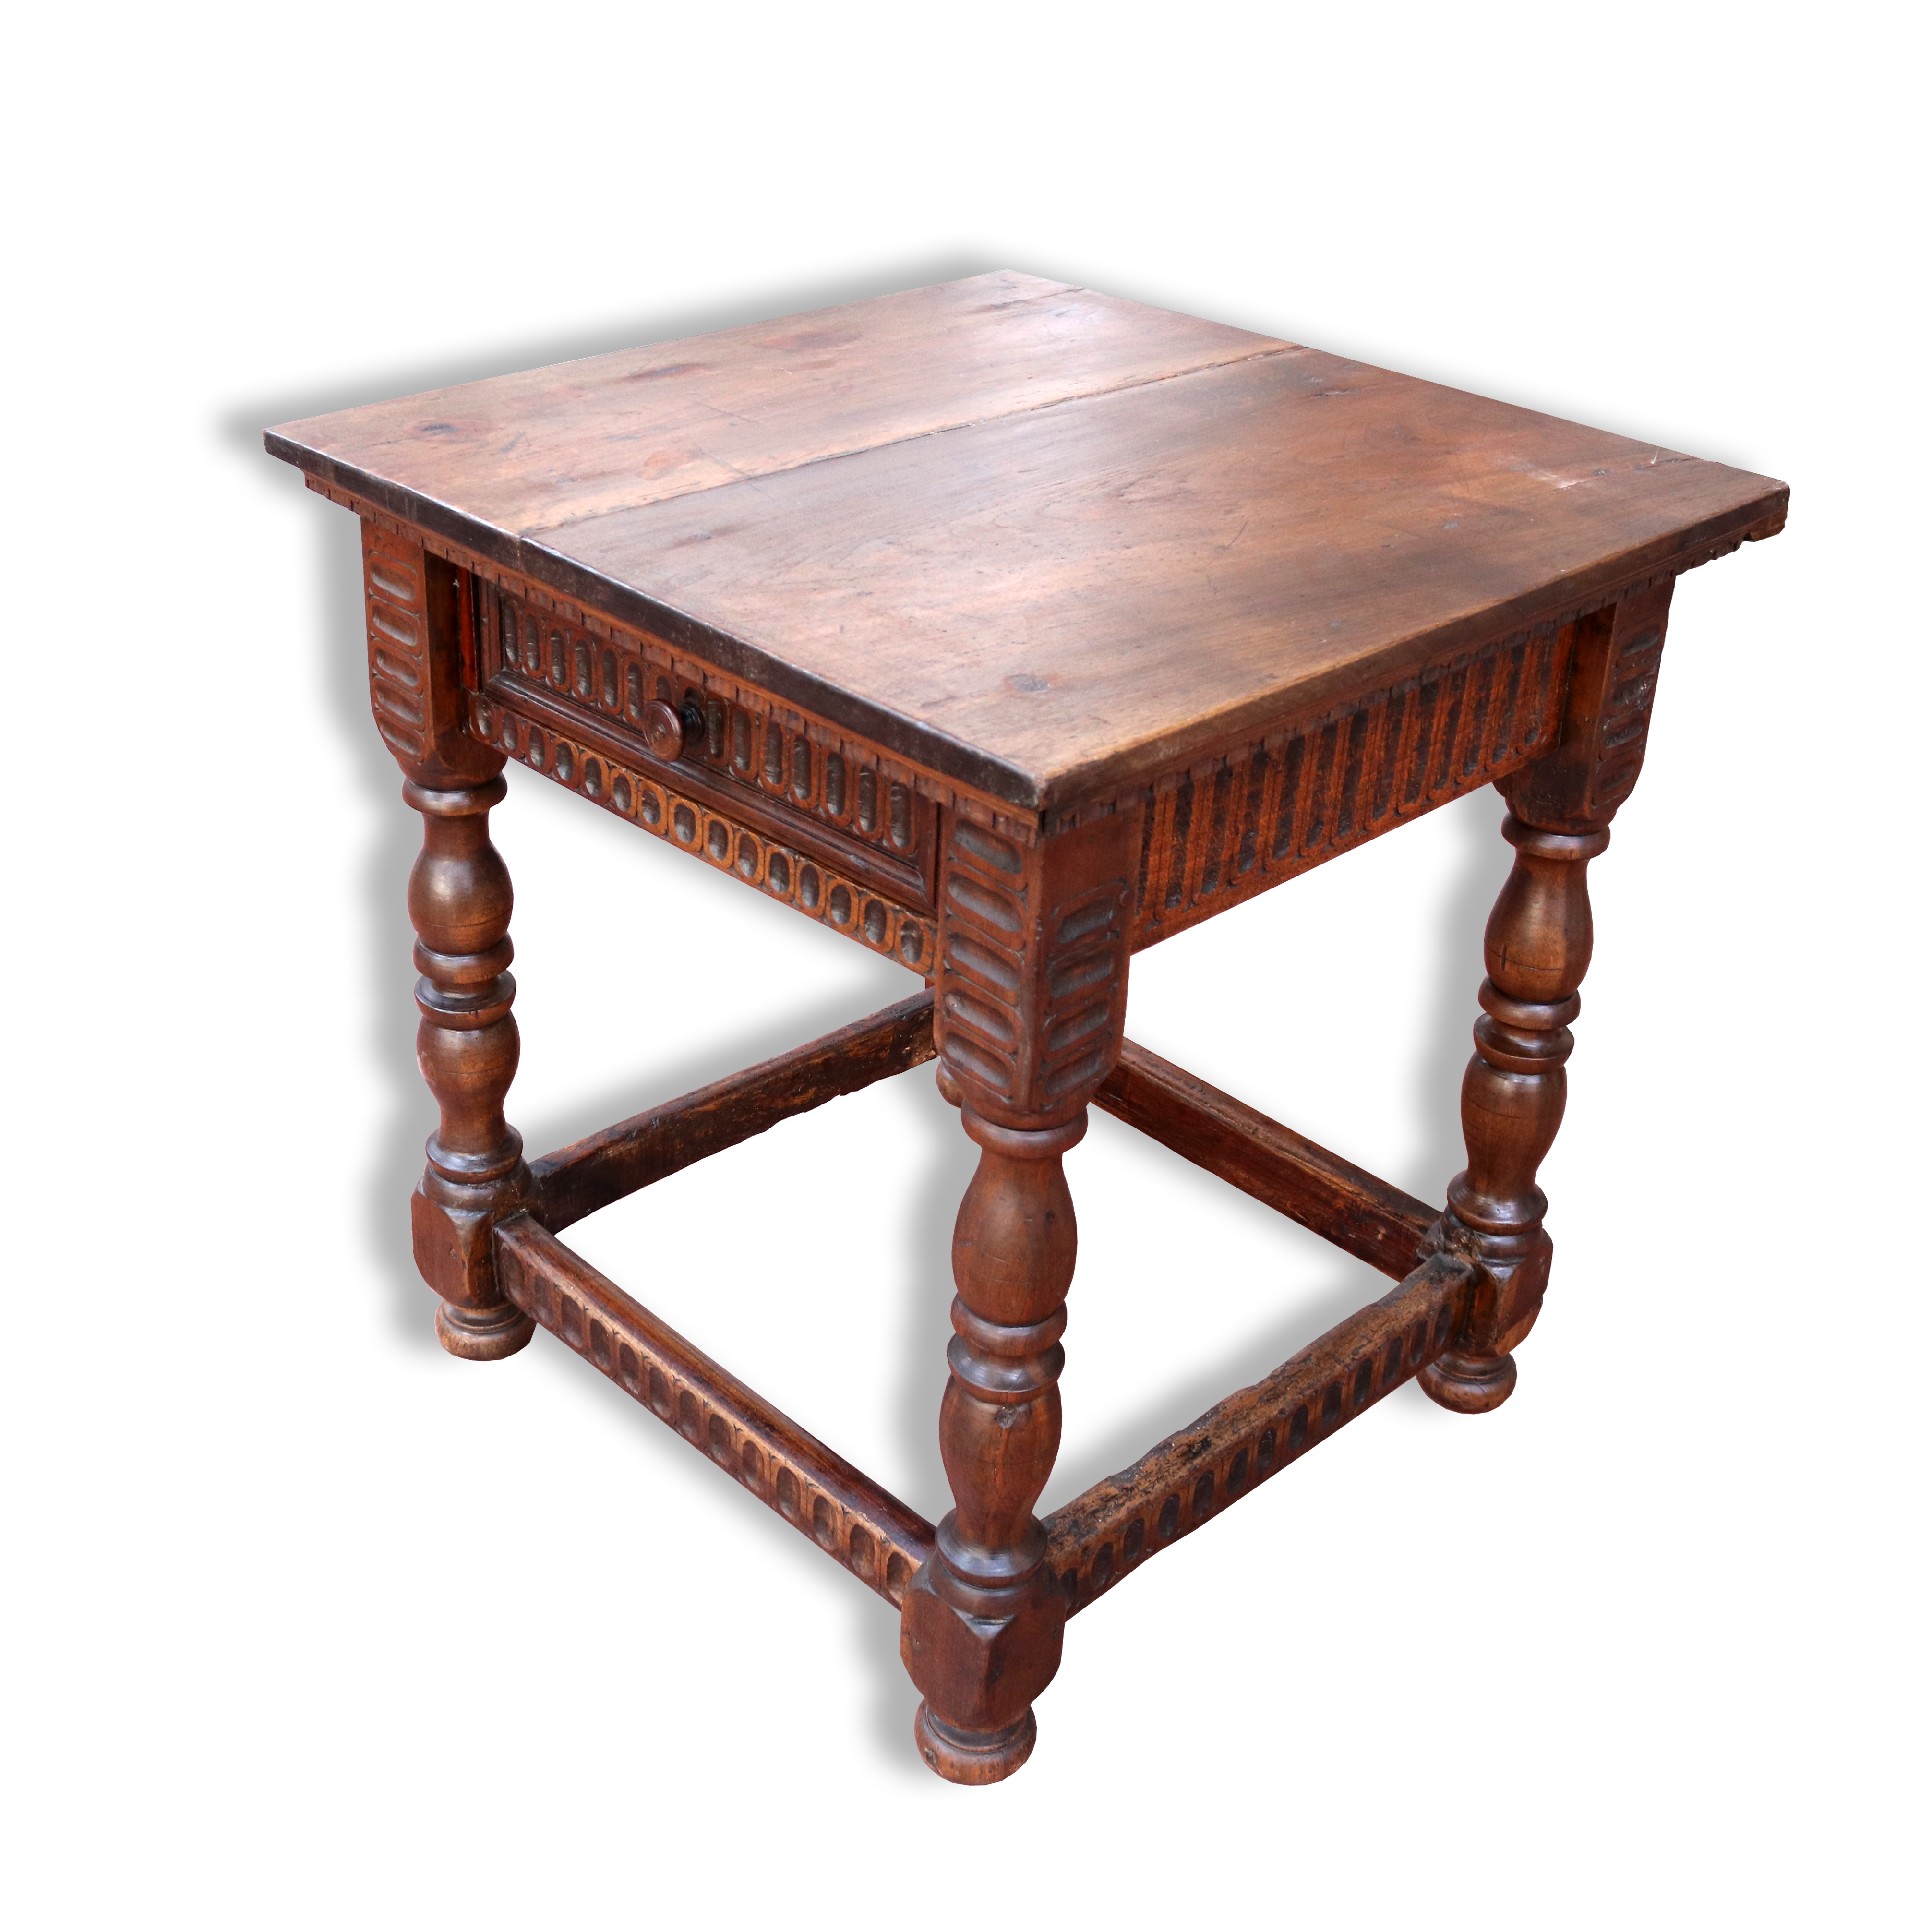 Antico tavolo in legno. - Tavoli in legno - Tavoli e complementi - Prodotti - Antichità Fiorillo